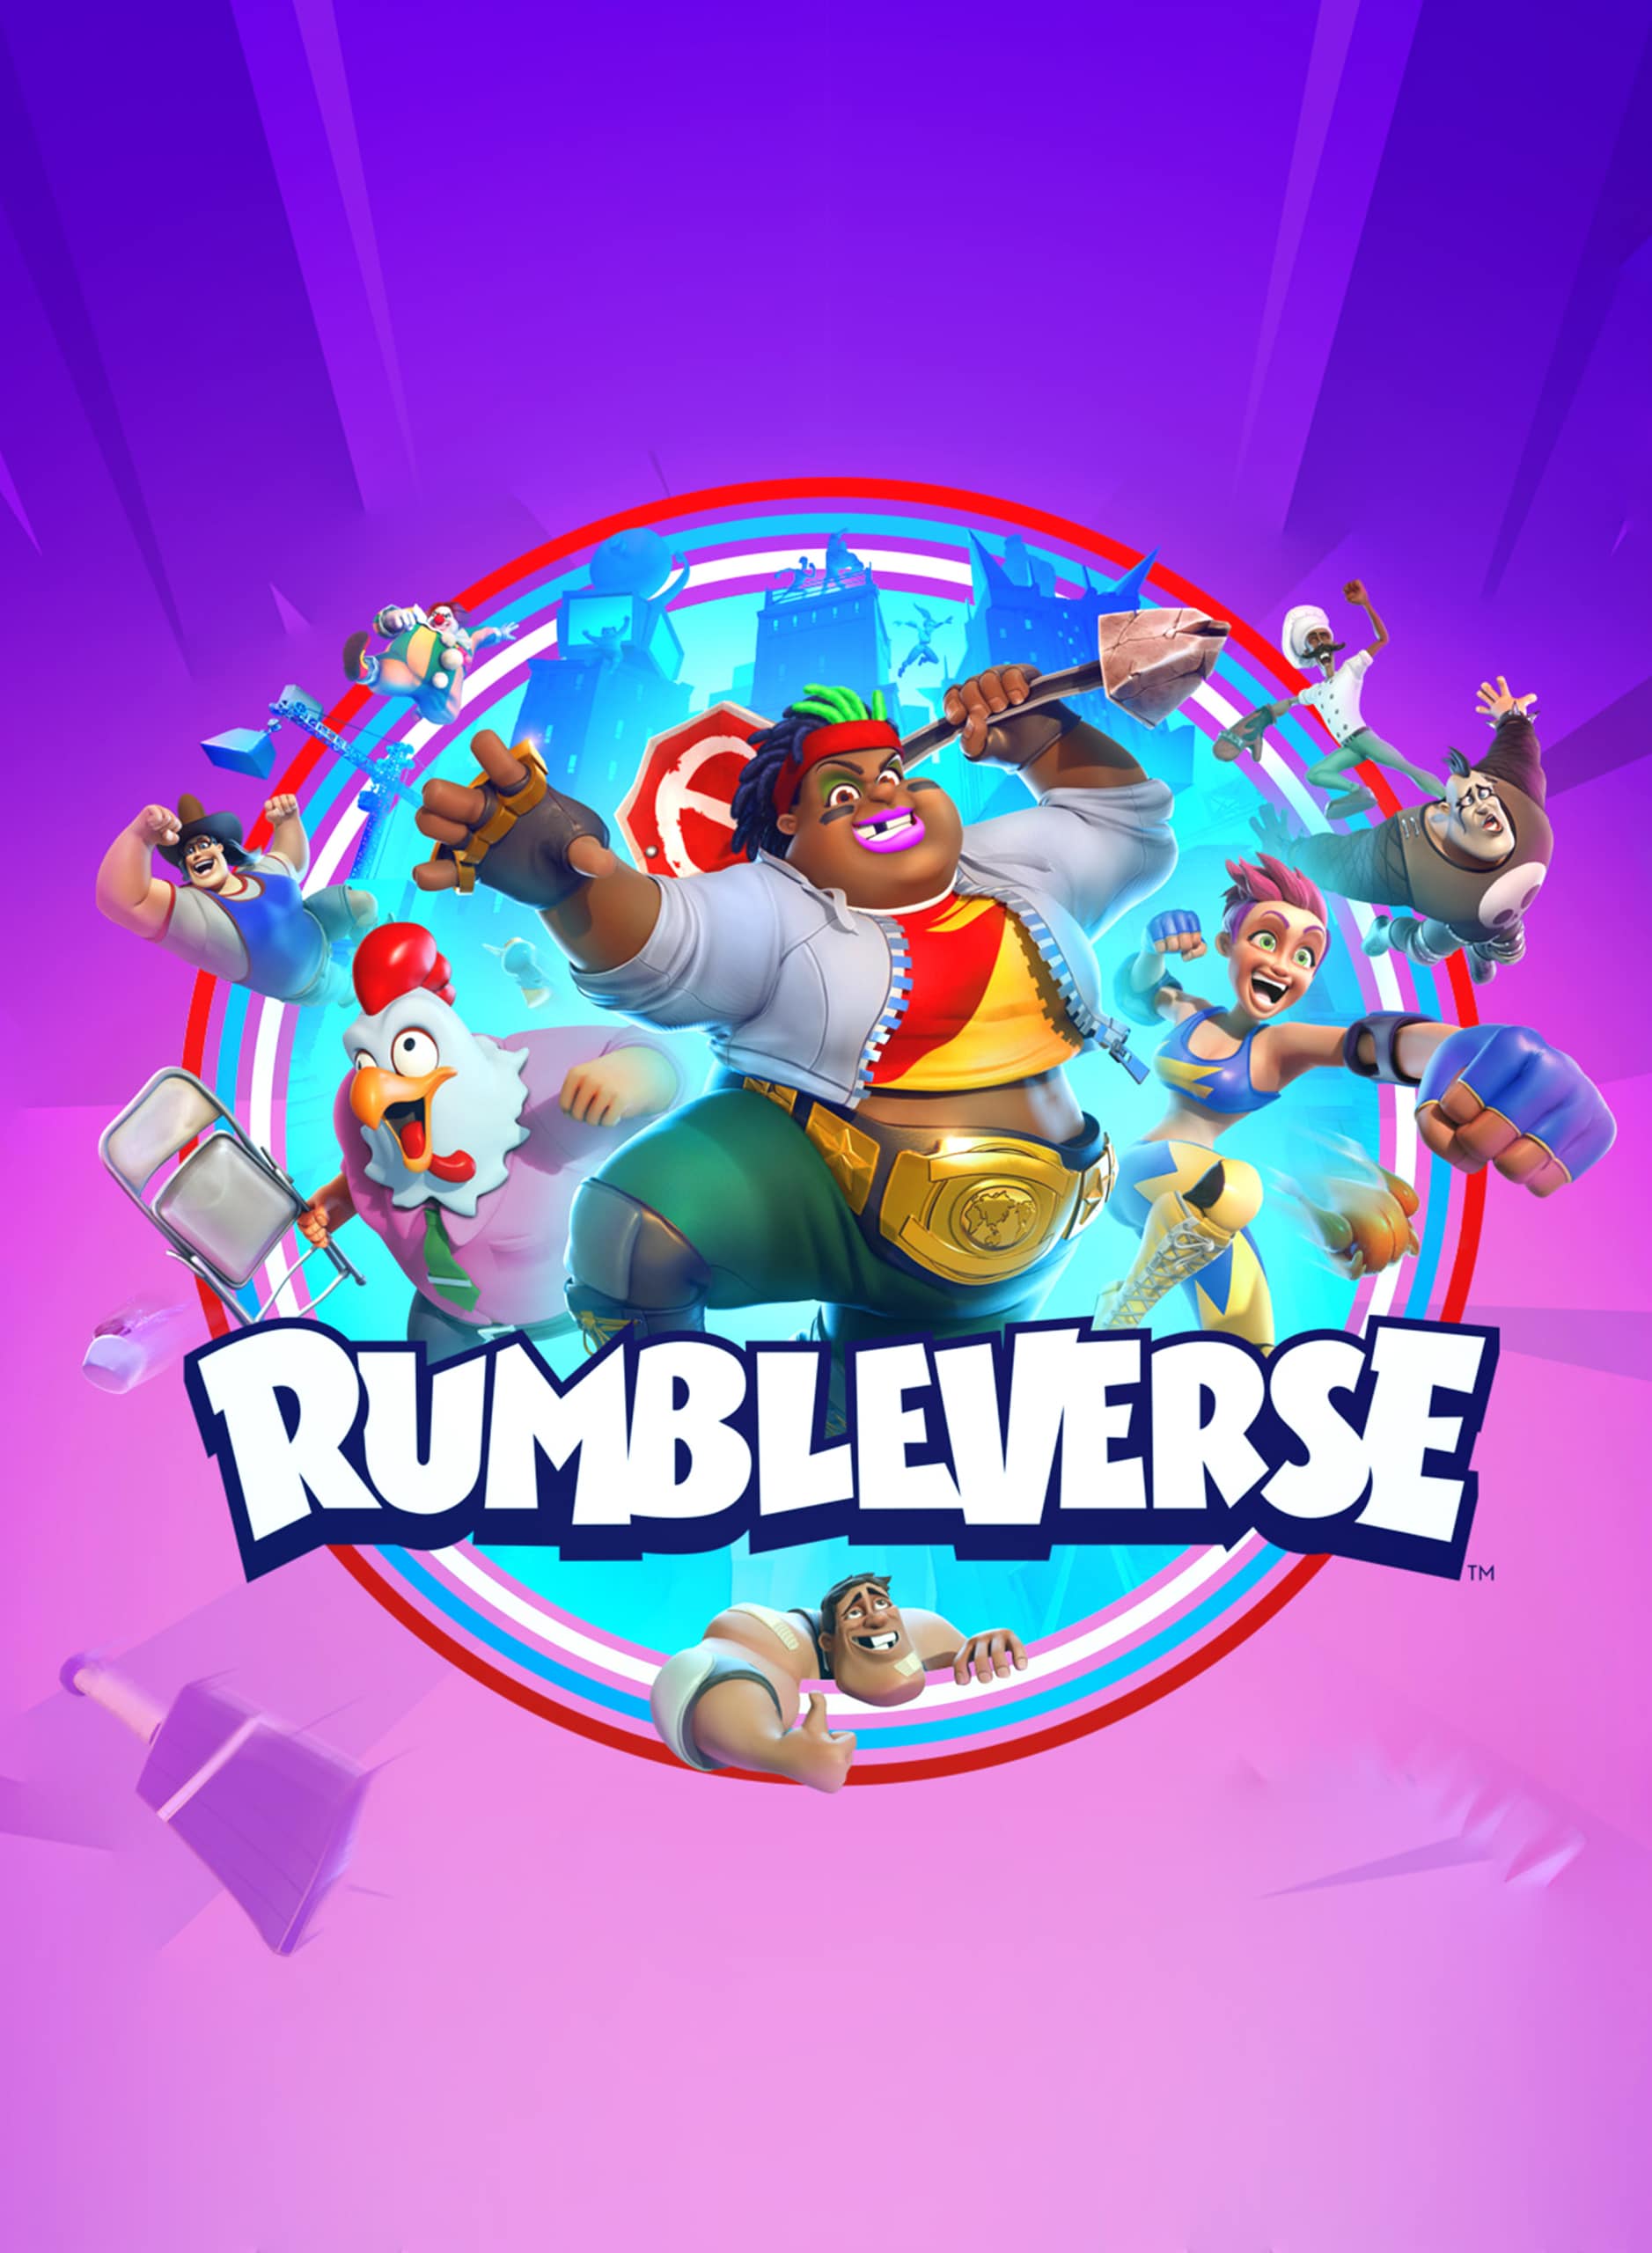 Rumbleverse homepage